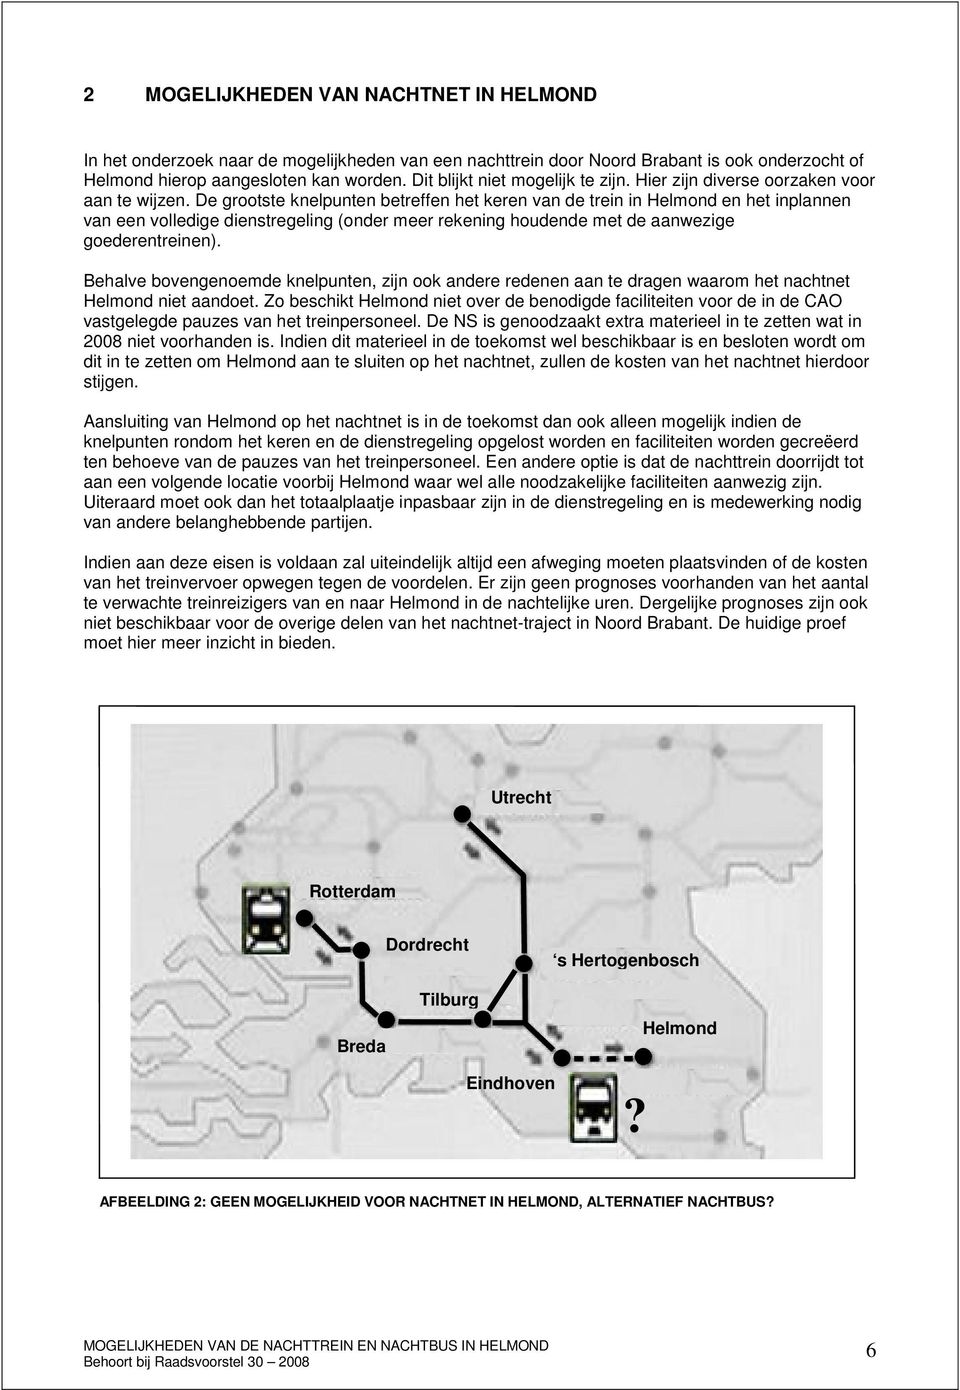 De grootste knelpunten betreffen het keren van de trein in Helmond en het inplannen van een volledige dienstregeling (onder meer rekening houdende met de aanwezige goederentreinen).